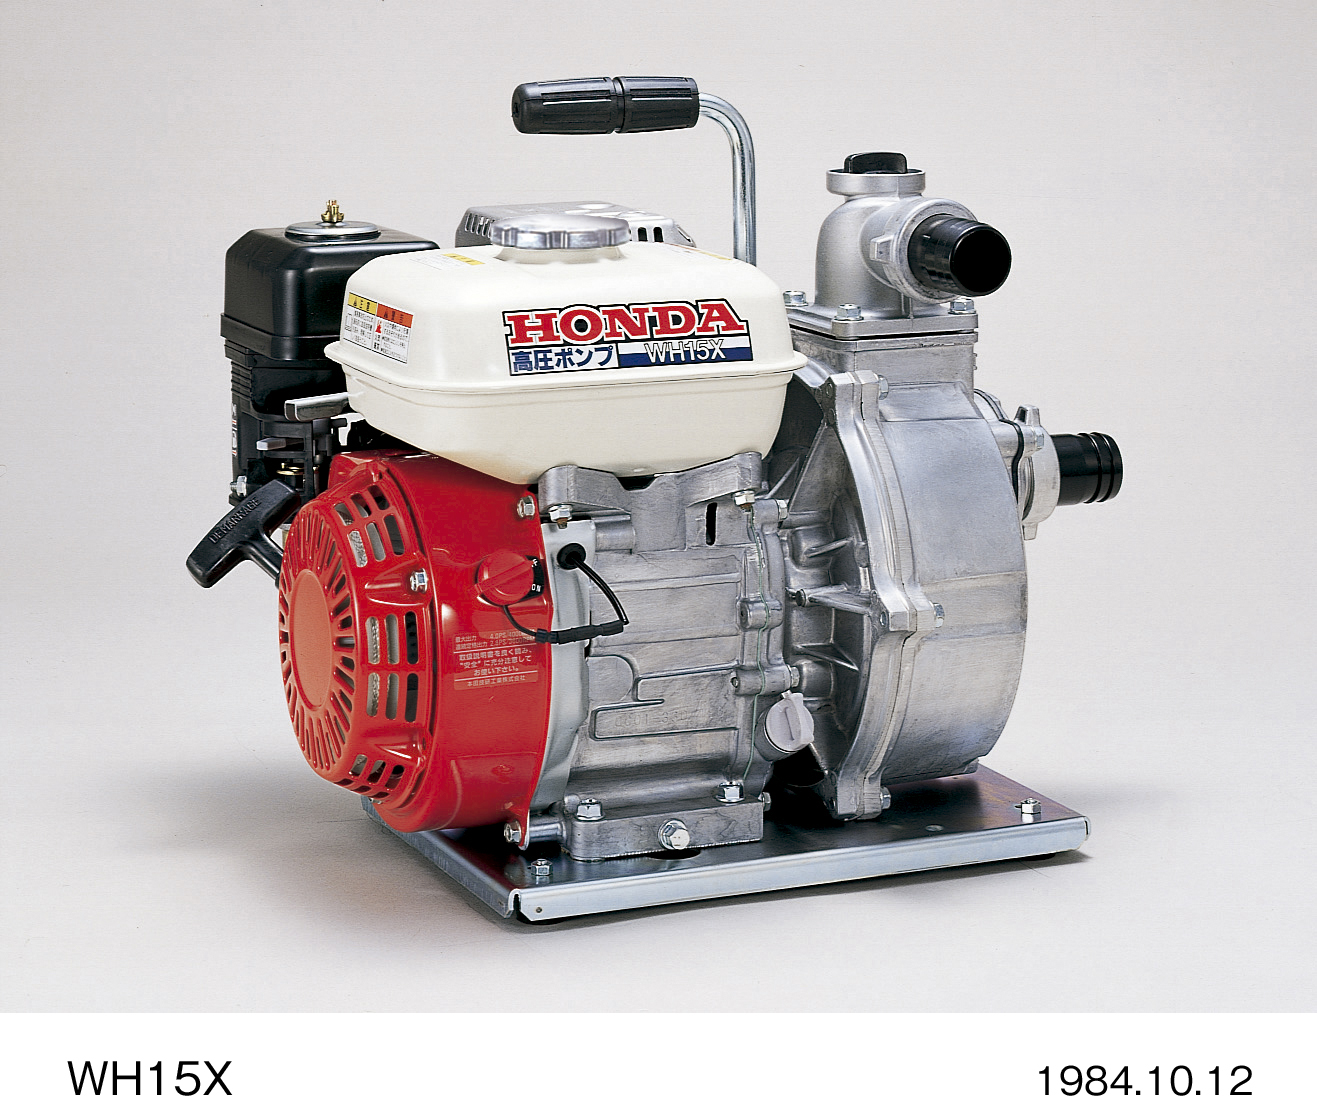 軽量コンパクト設計で、送水能力にすぐれた 高圧ポンプ「WH15X」と「WH20X」の2機種を発売 | Honda 企業情報サイト